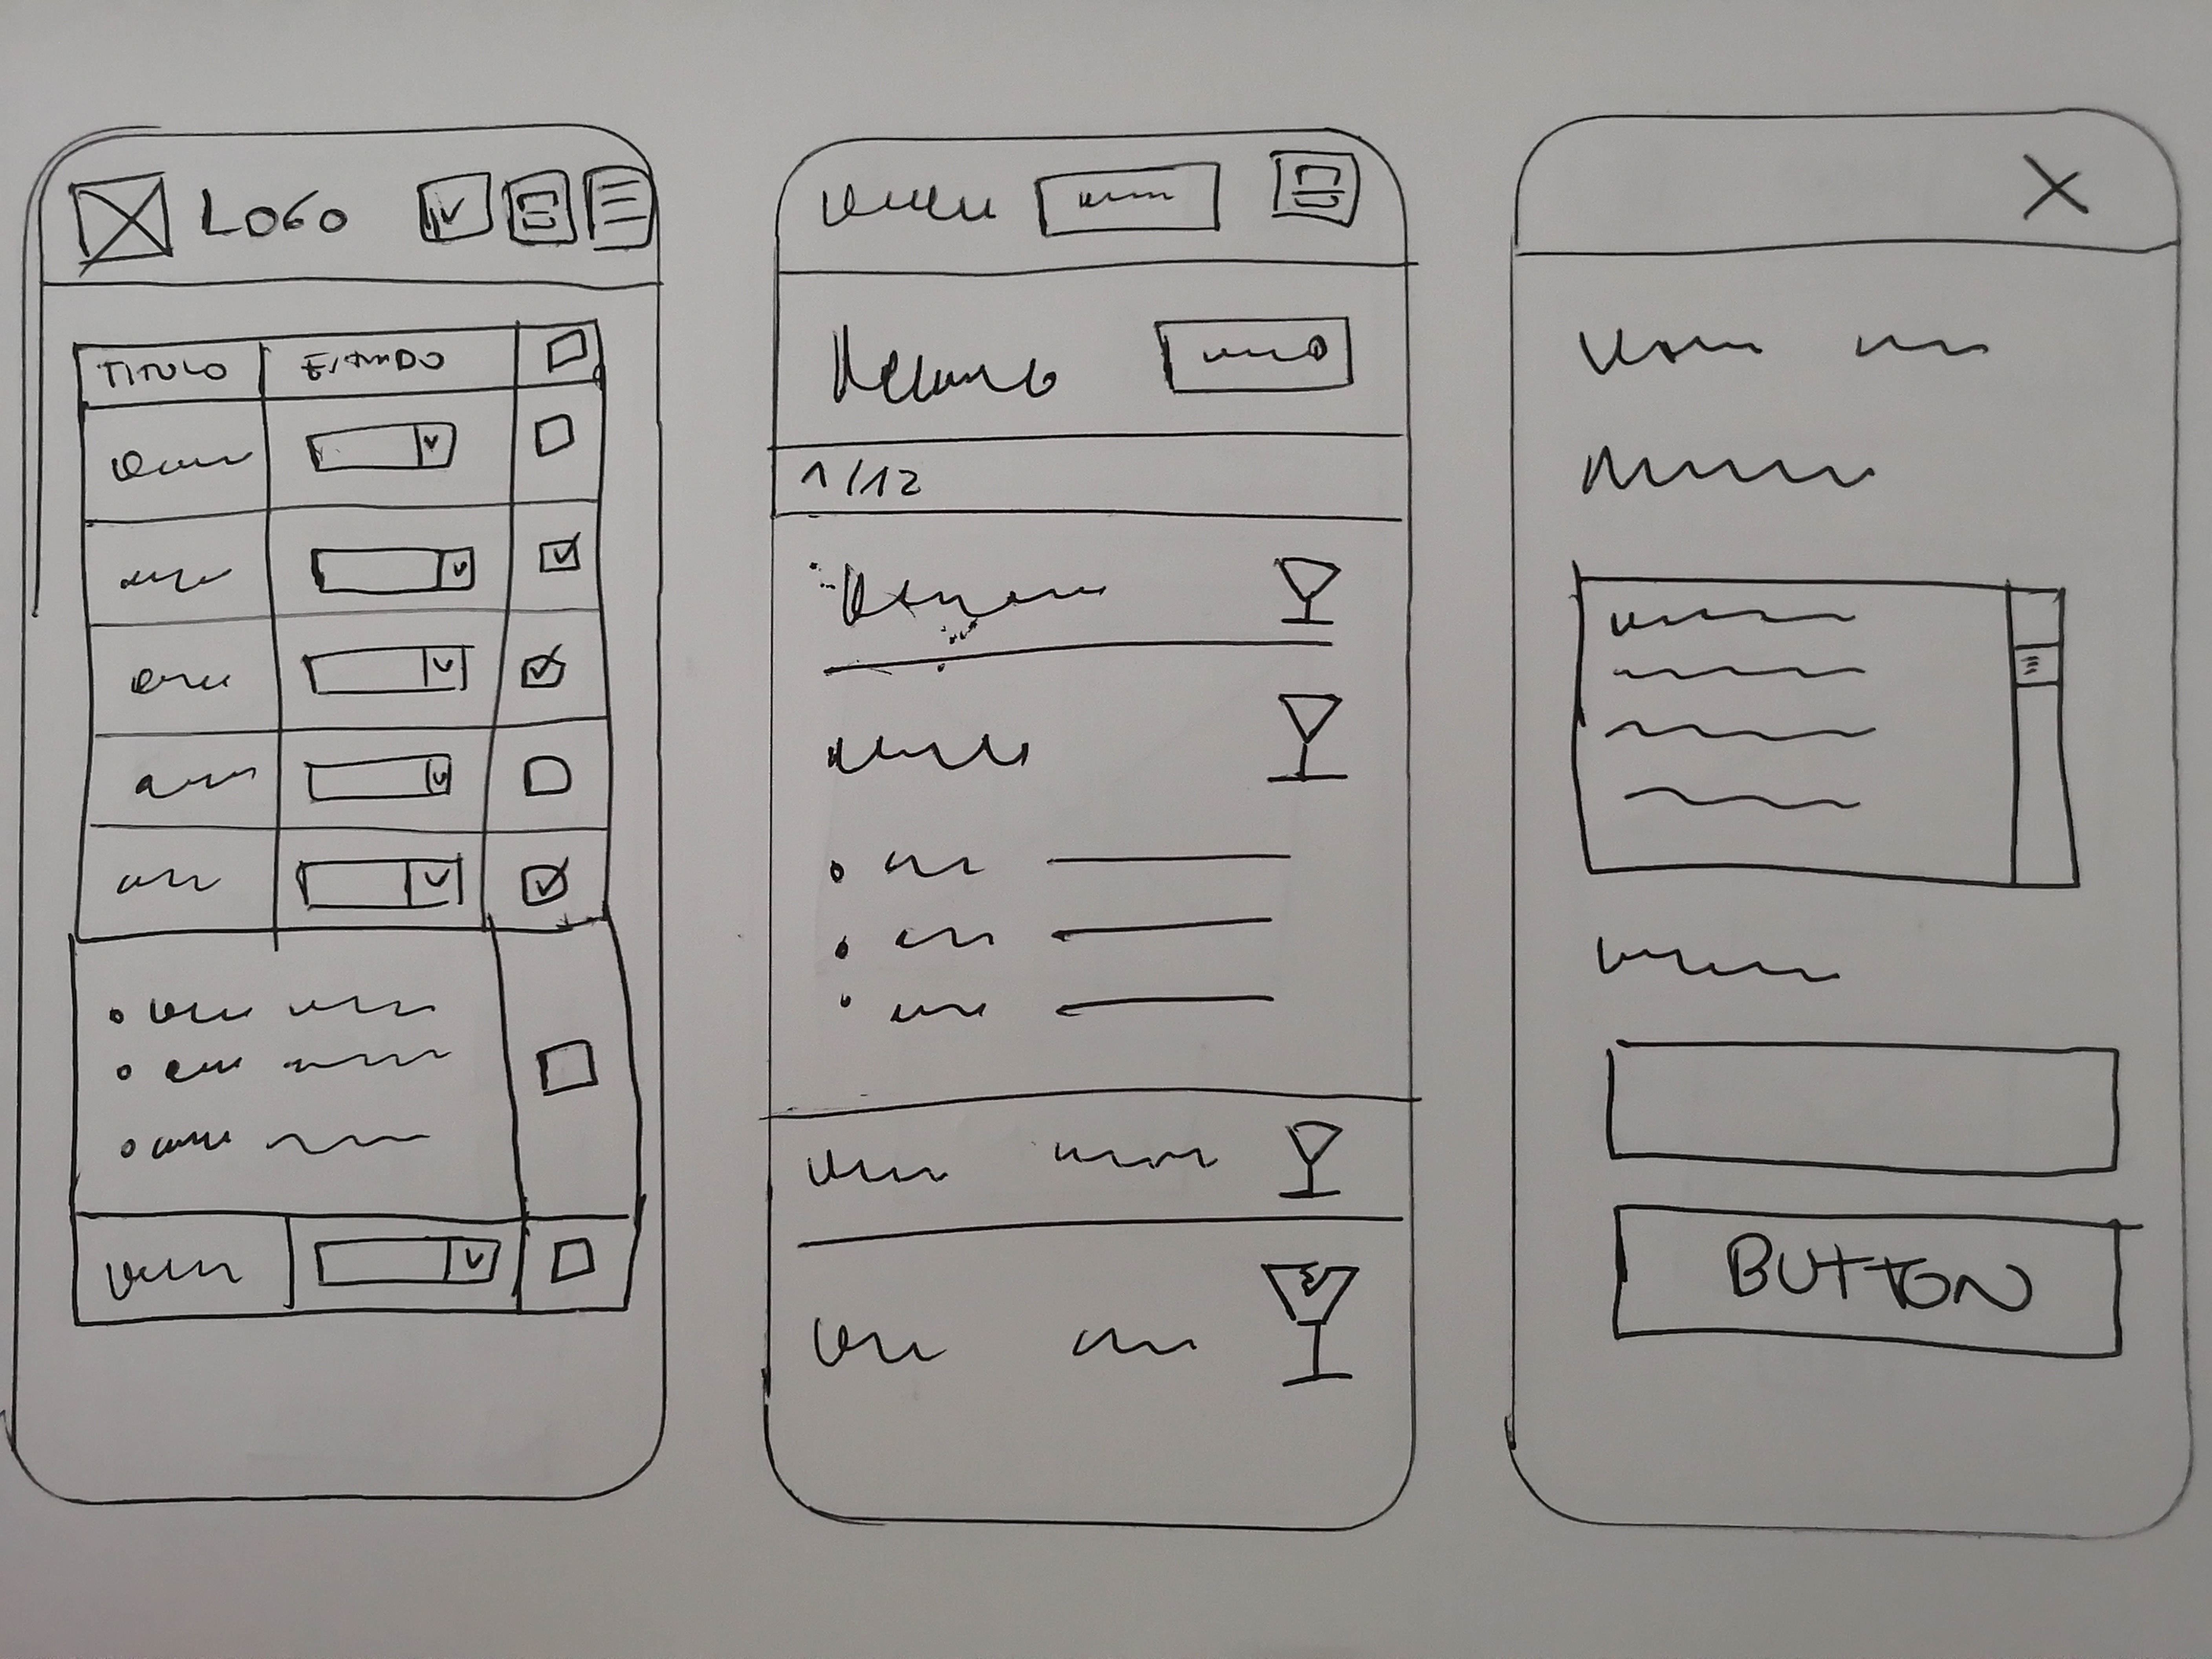 设计纸质原型以验证用户体验。